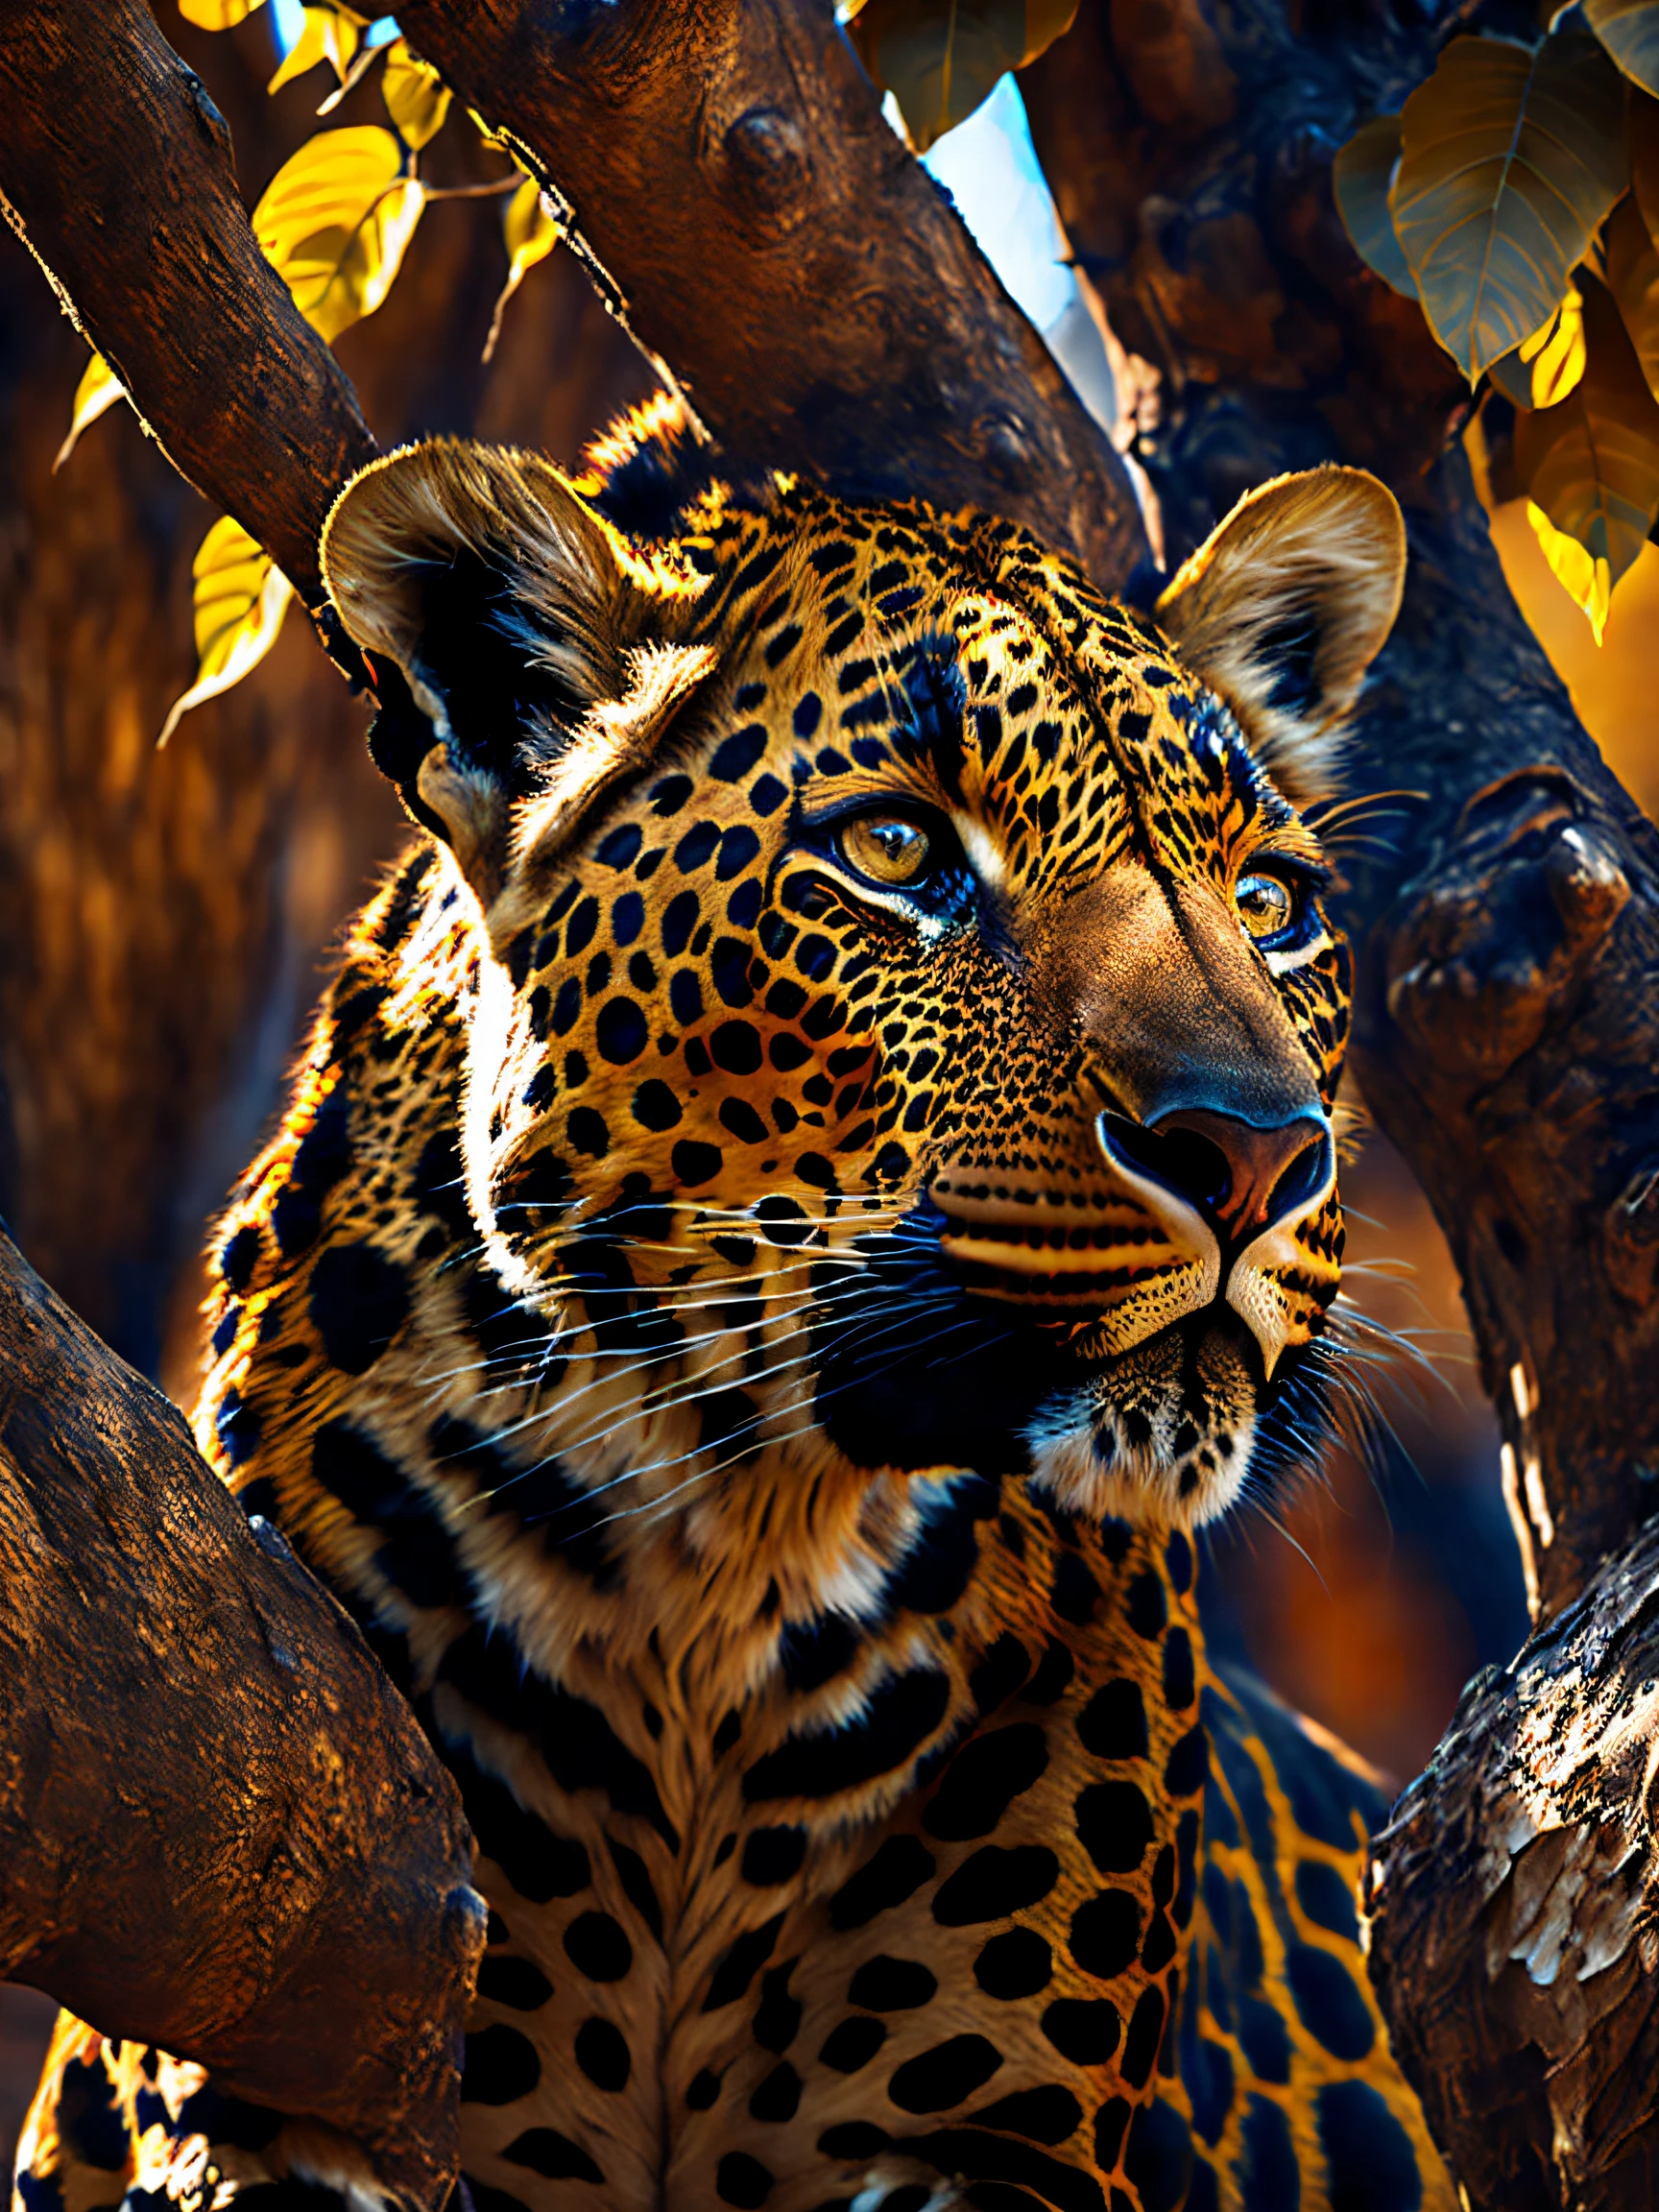 Un leopardo durmiendo en las ramas de un árbol en la sabana., Clima cálido y soleado, Realista, detallado, 8k, estilo de contraste to8, Fotografía discreta, fotografía, destello de lente, Documental de la vida salvaje, colores vívidos, cámara sin espejo Sony a6600, embellecer2